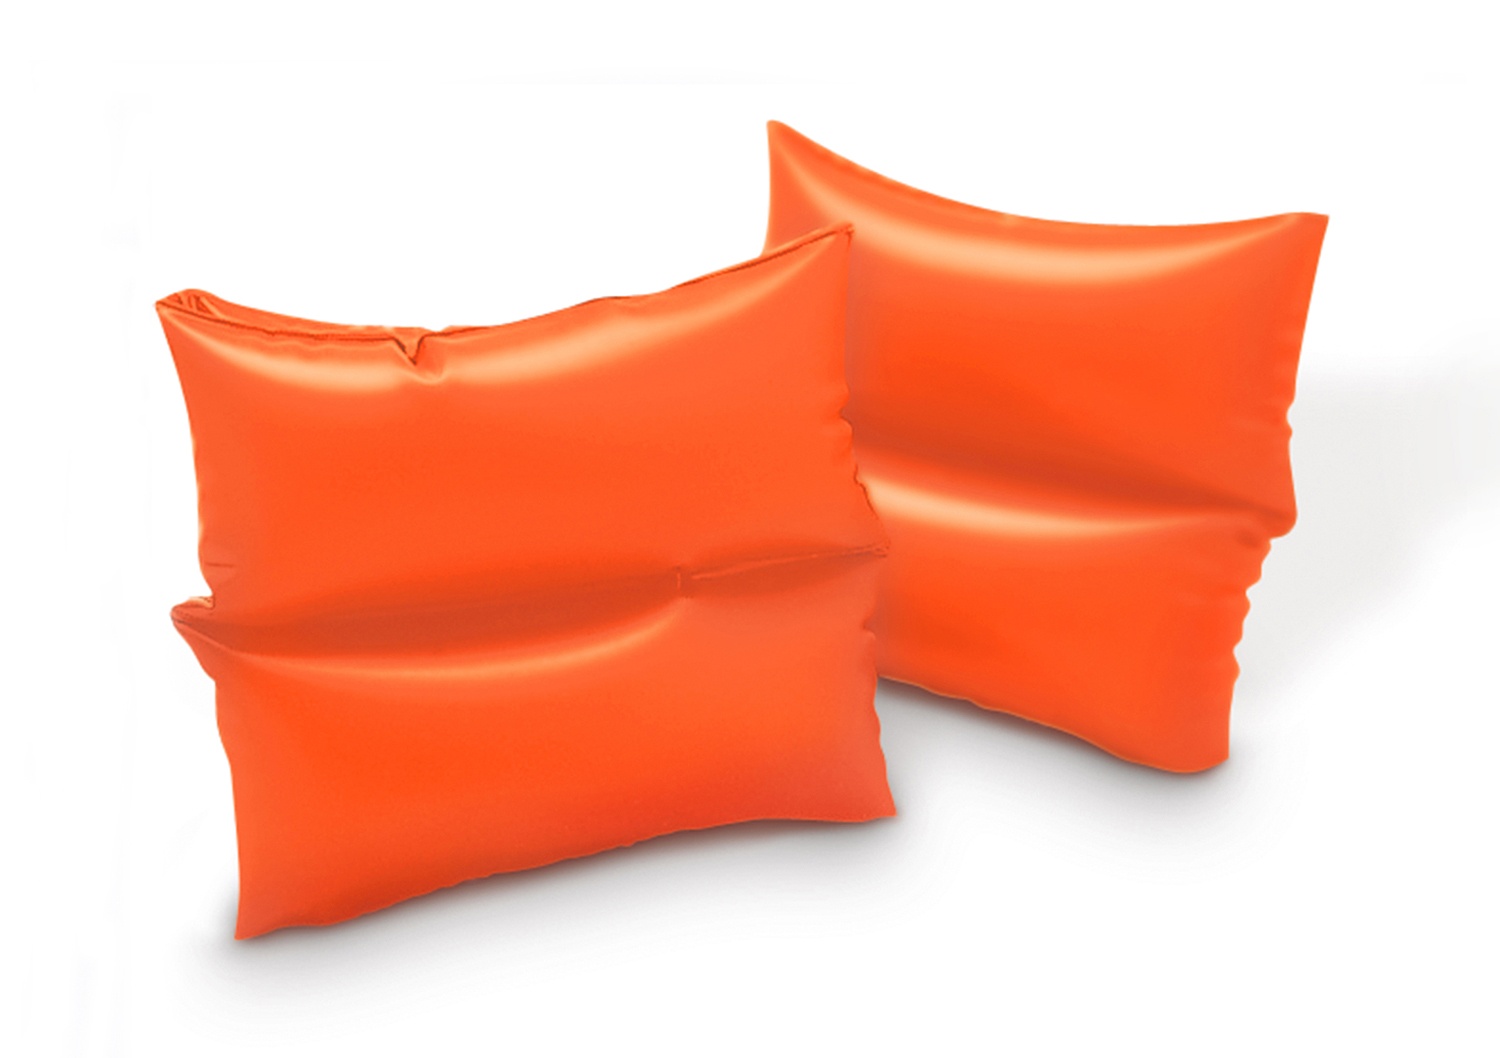 Нарукавники надувные Intex оранжевые Arm Bands (Маленькие), 3-6 лет,19х19 см надувные нарукавники intex arm bands